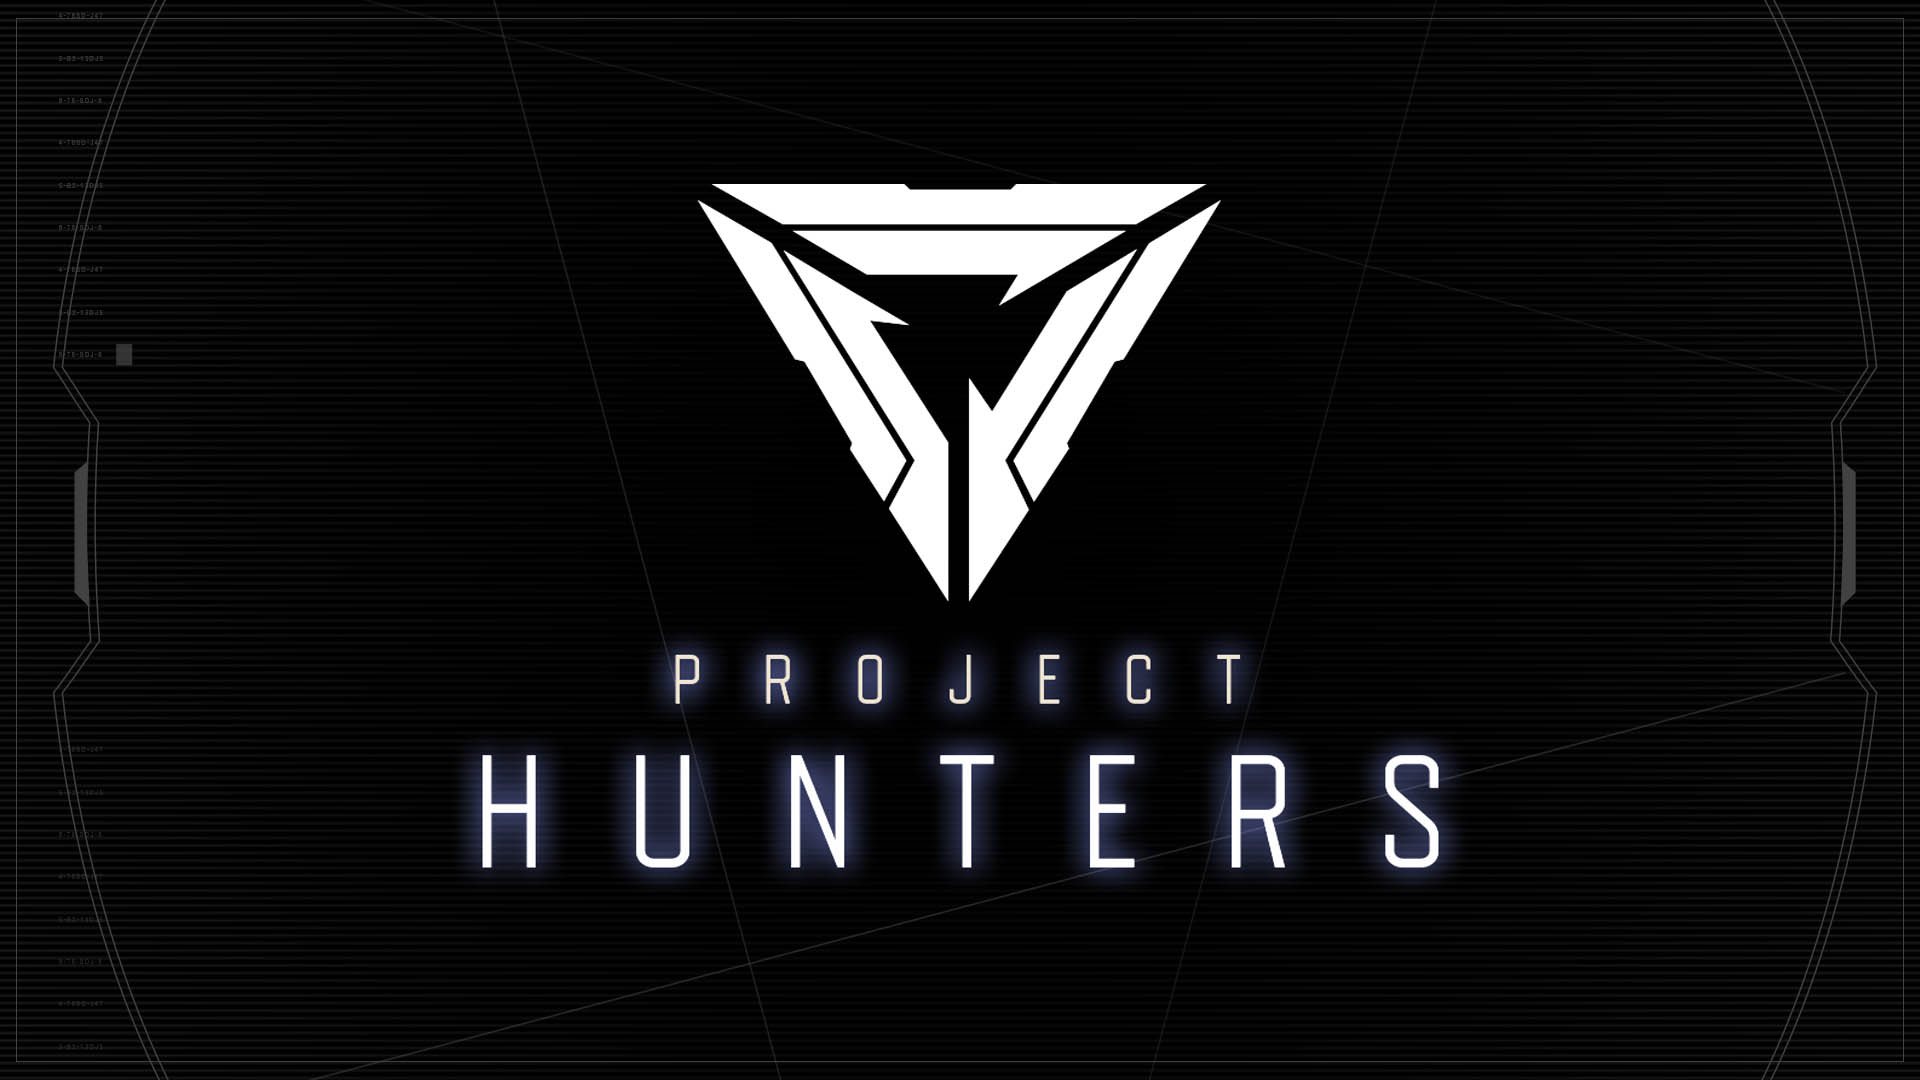 期間限定イベント Project Hunters 開催 オンラインゲーム リーグ オブ レジェンド 合同会社ライアットゲームズのプレスリリース